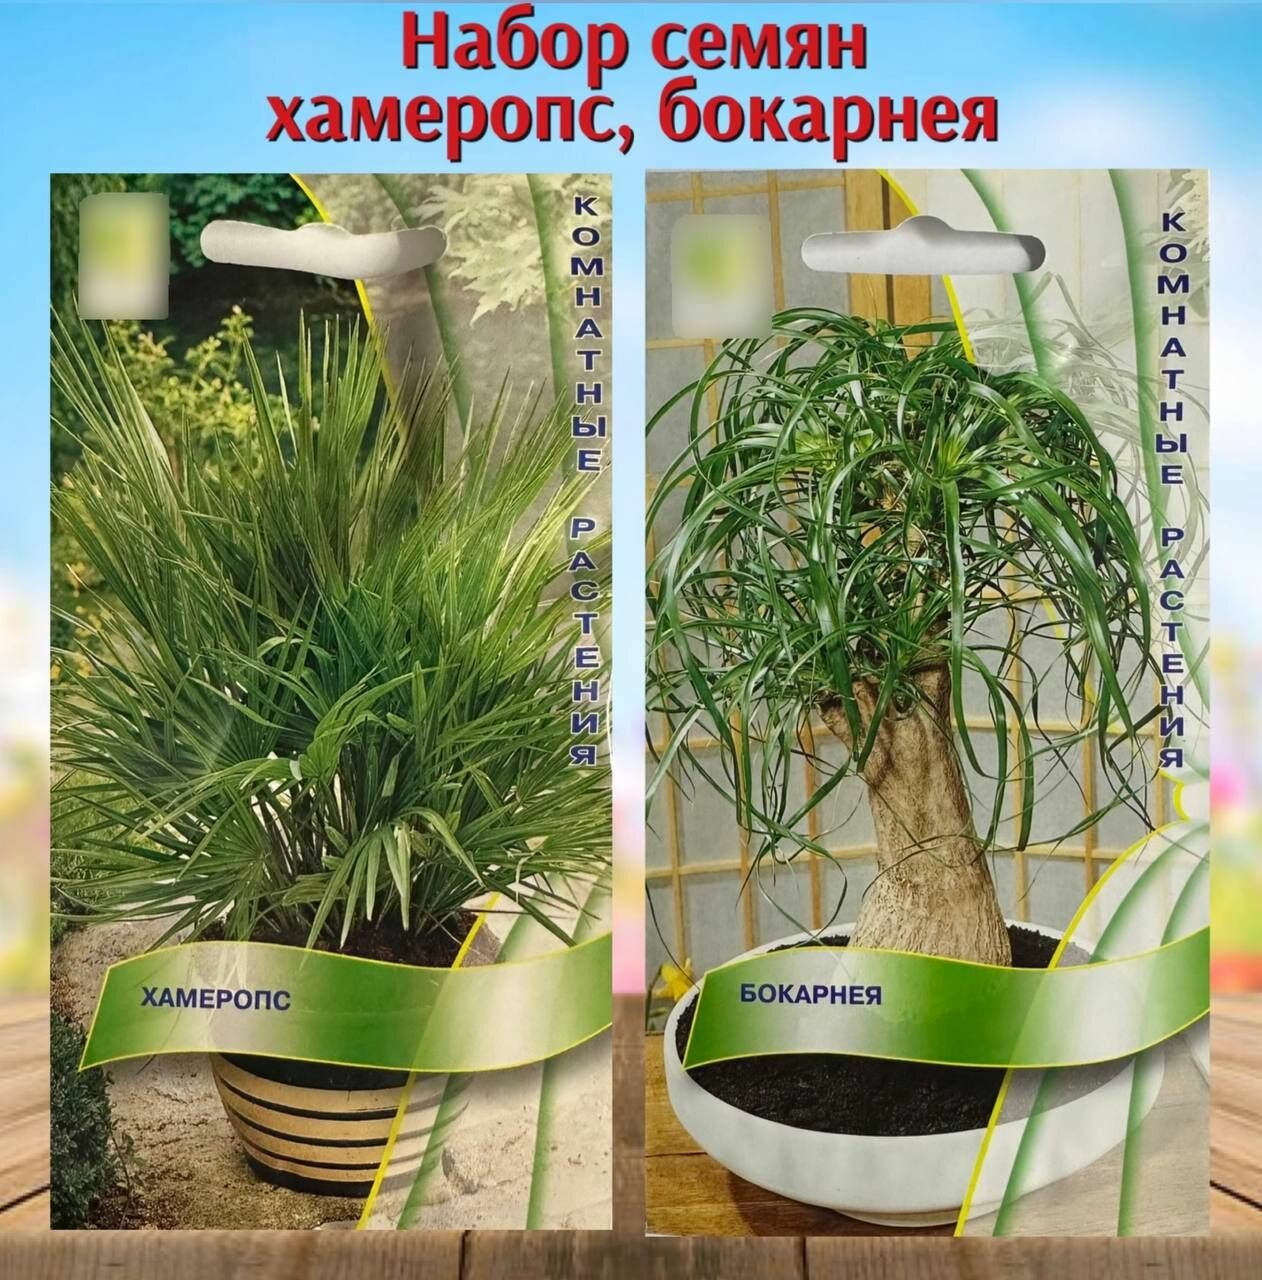 Семена комнатных растений пальма Хамеропс и Бокарнея 2 уп.